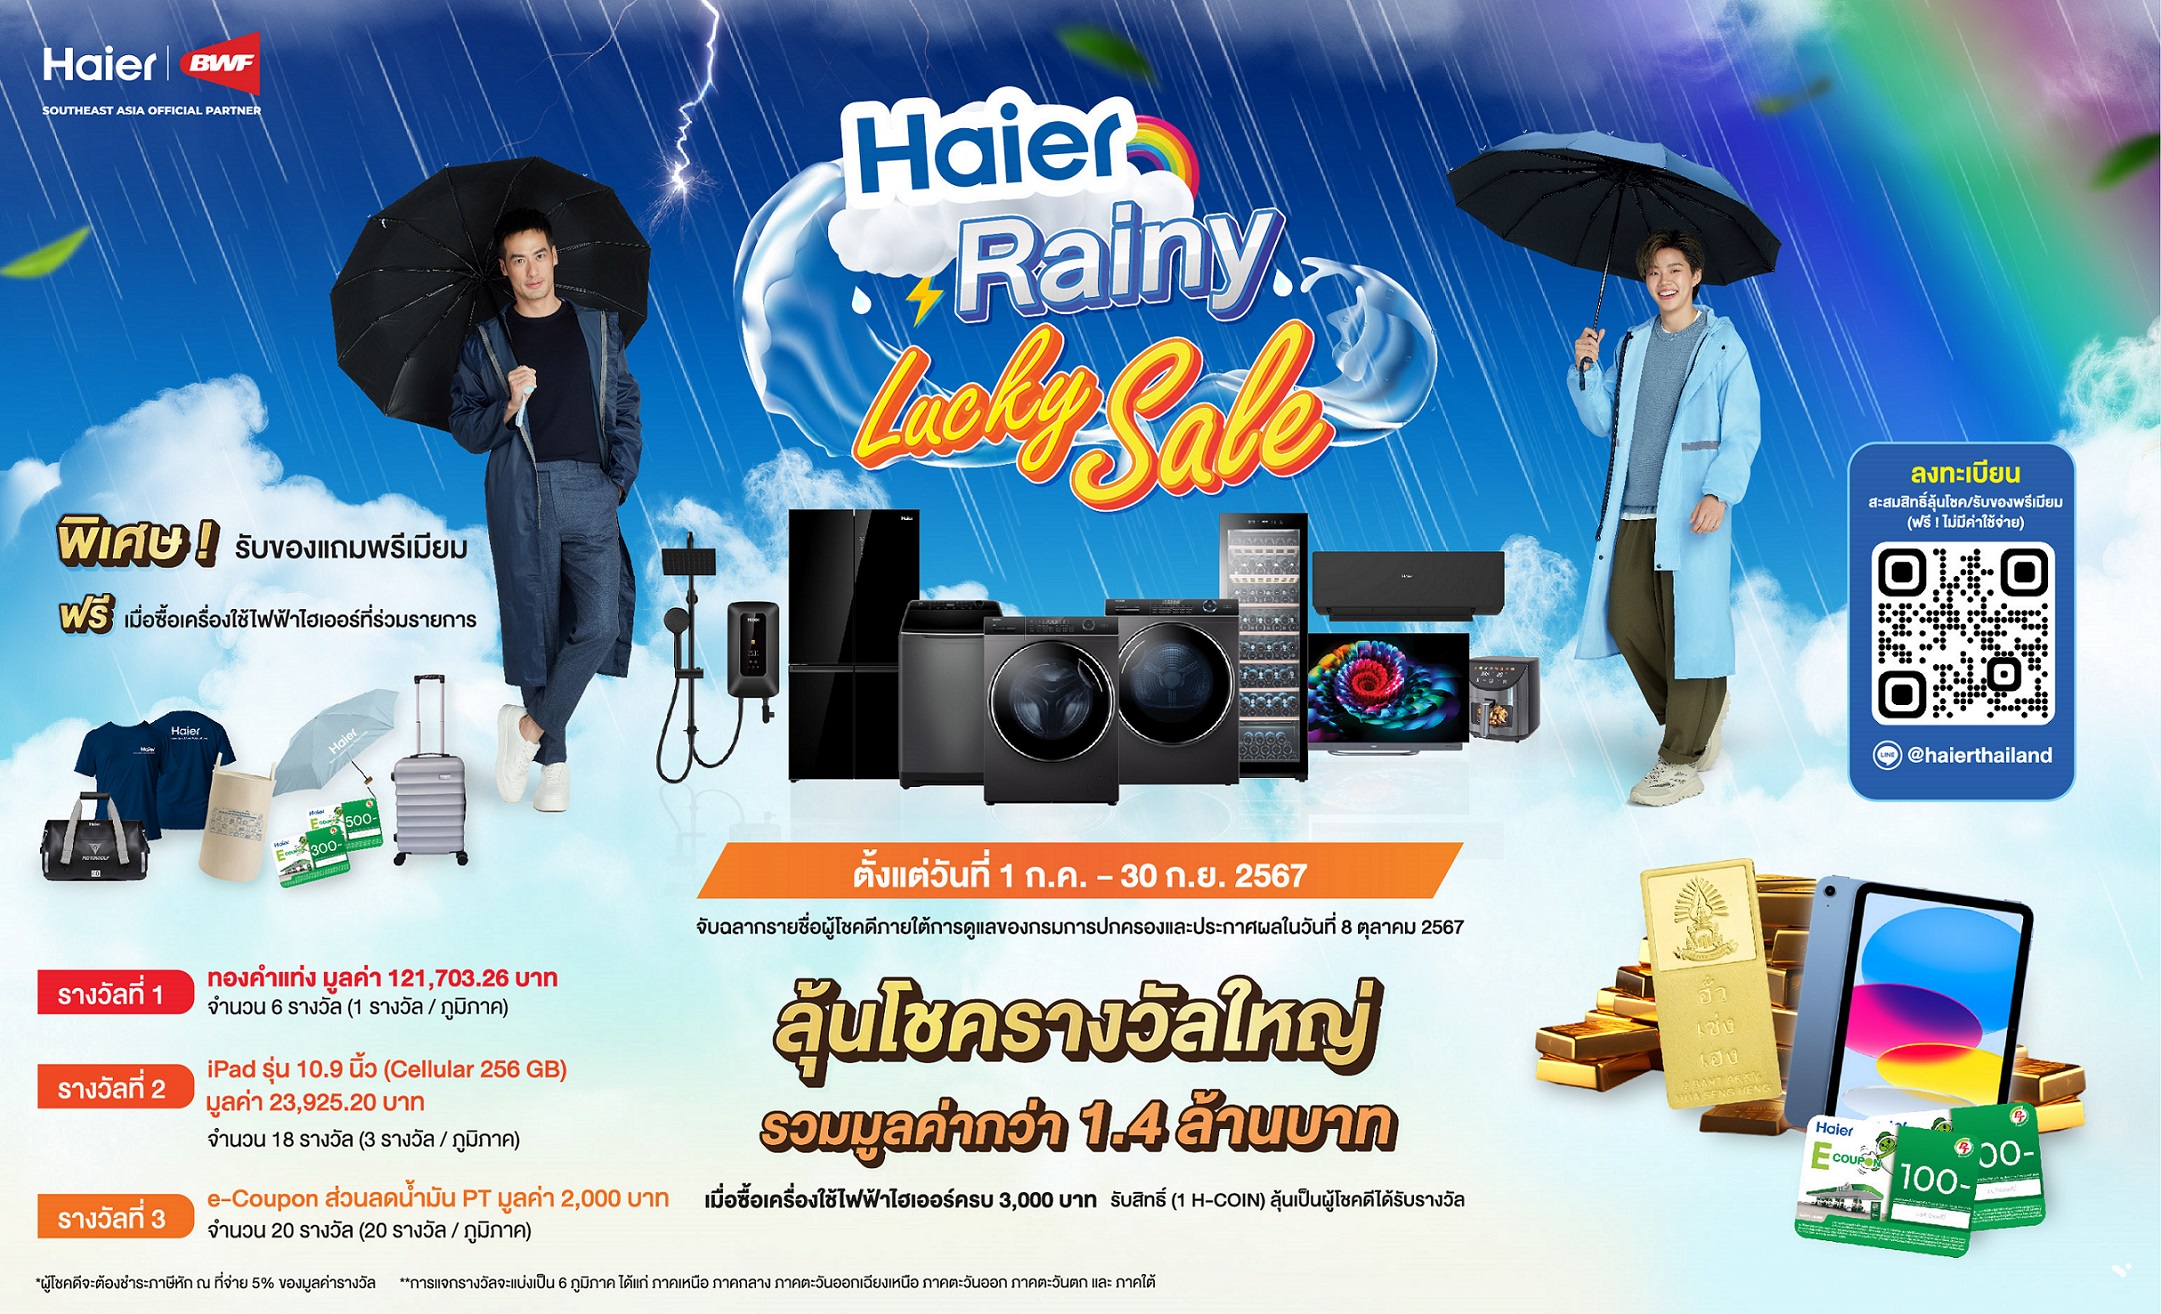 ใจป้ำ! ไฮเออร์ ประเทศไทย ชวนช้อปให้ฉ่ำกระหน่ำหน้าฝน  จัดแคมเปญ ‘Rainy Lucky Sale’ แจกทองและรางวัลใหญ่กว่า 1.4 ล้านบาท สำนักพิมพ์แม่บ้าน